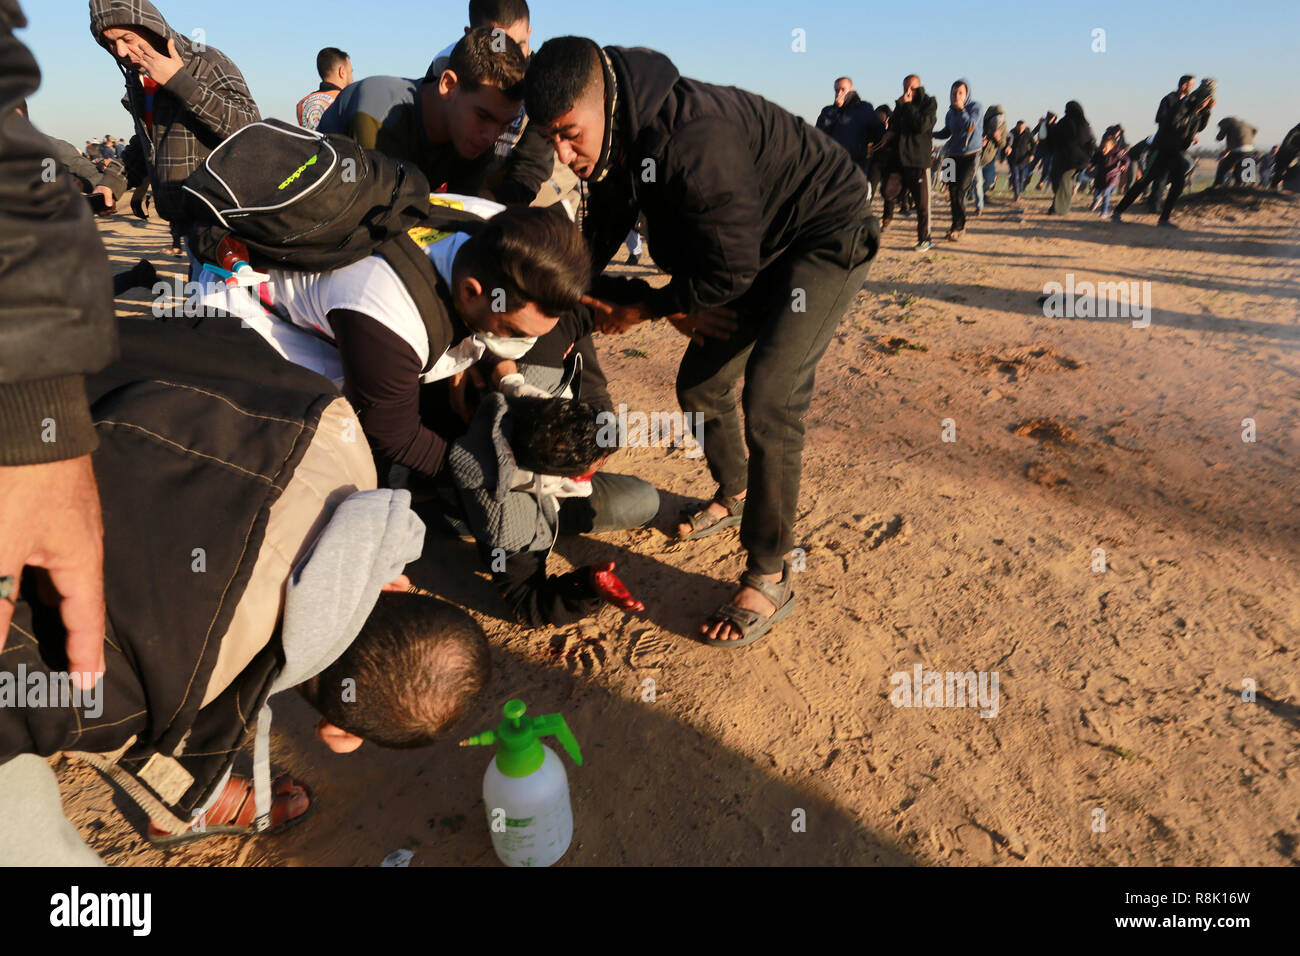 La striscia di Gaza, la Palestina. Il 14 dicembre 2018 un uomo ferito, durante le forze israeliane intervenire in dimostranti palestinesi come stadio hanno una protesta dentro th Foto Stock